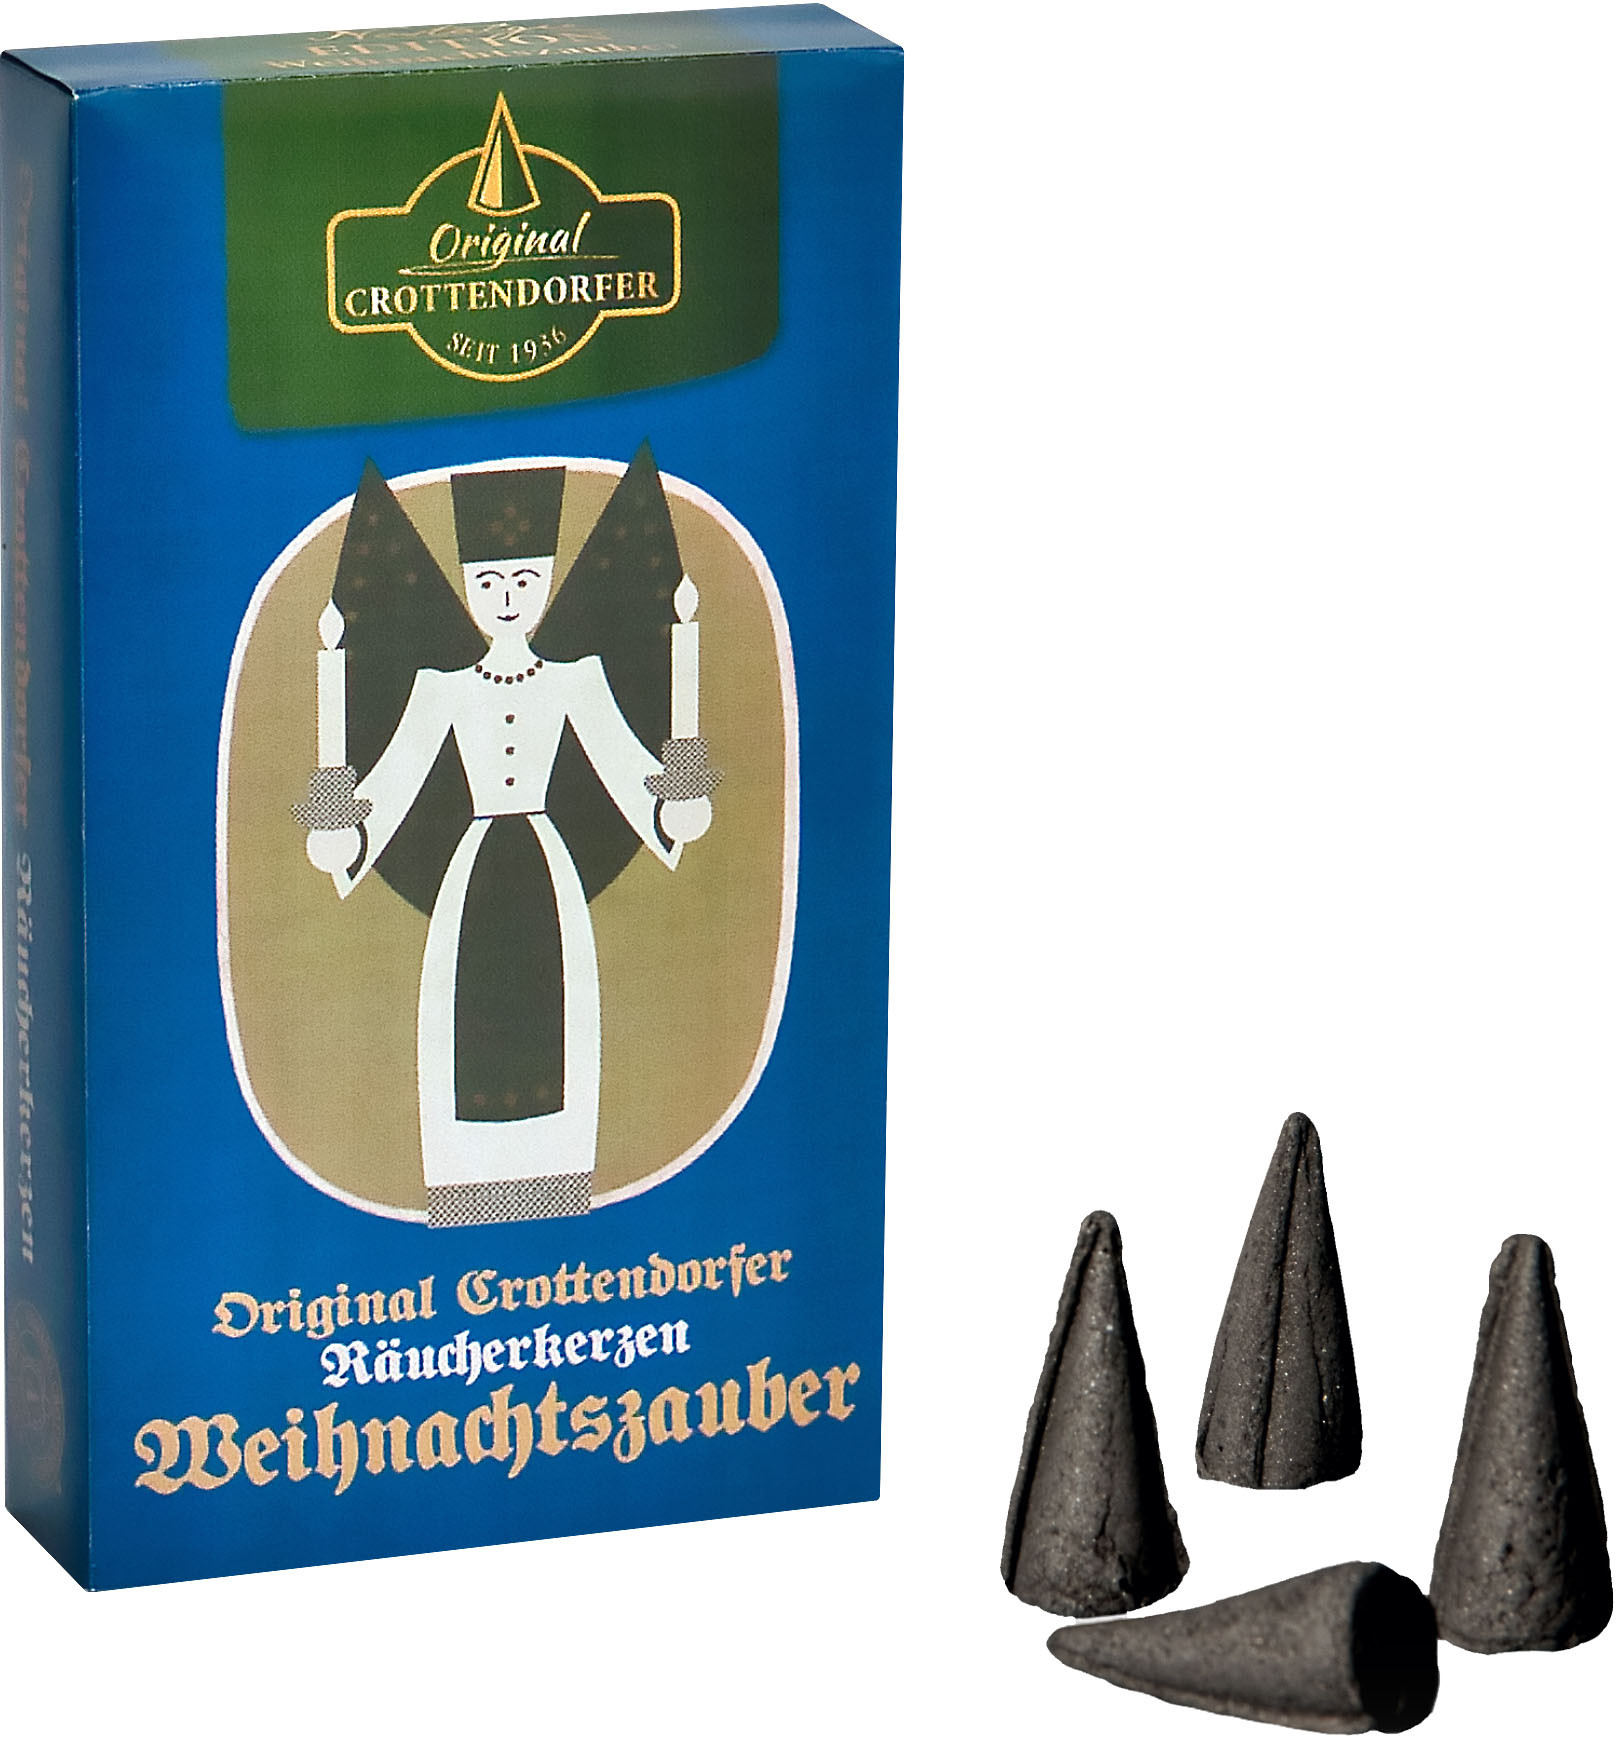 Crottendorfer Räucherkerzen Weihnachtszauber - Nostalgie-Edition